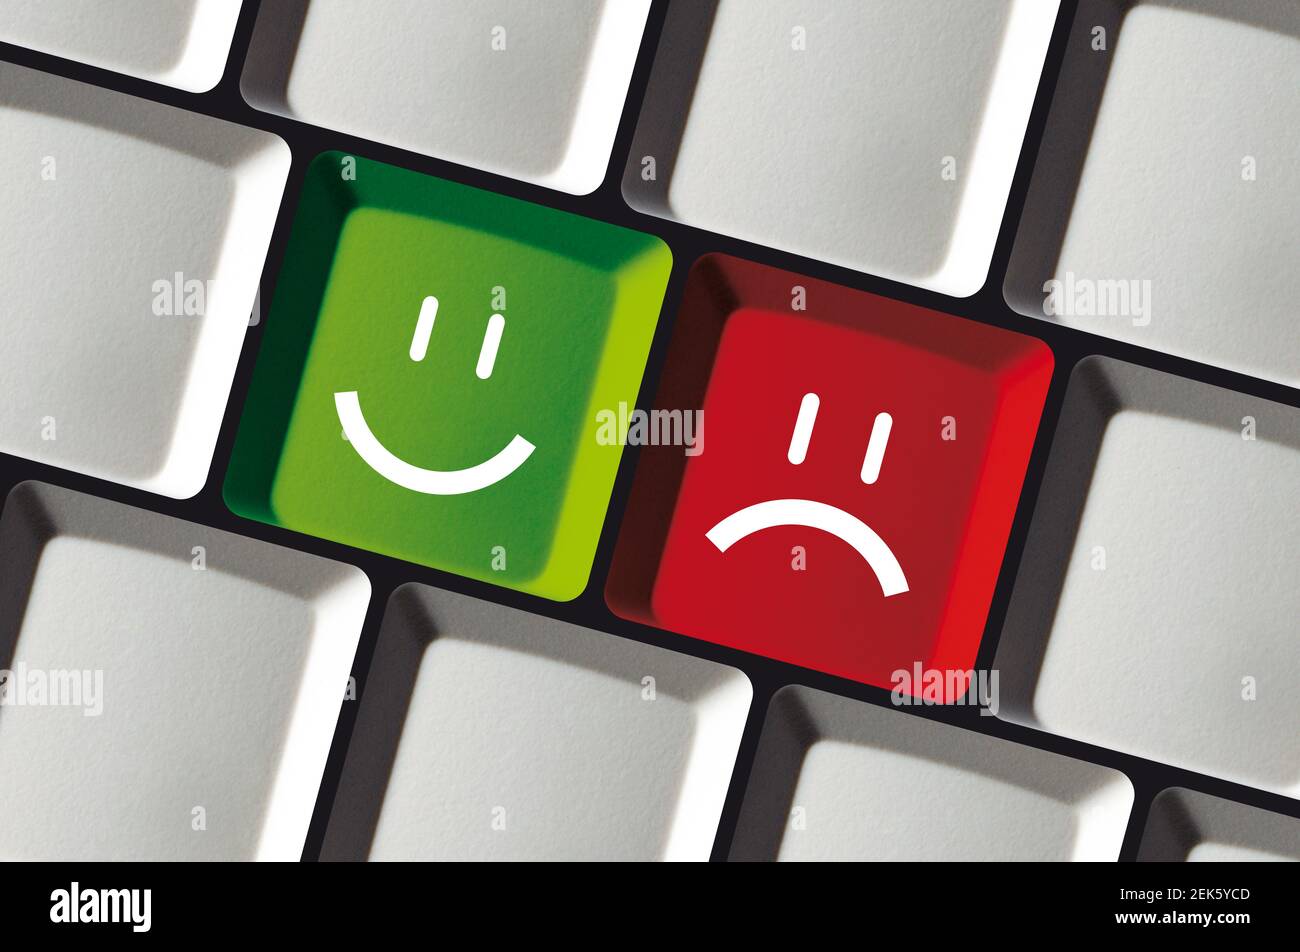 Glücklich oder traurig - Tastatur mit zwei Feedback-Smilies - Rot und grün Stockfoto